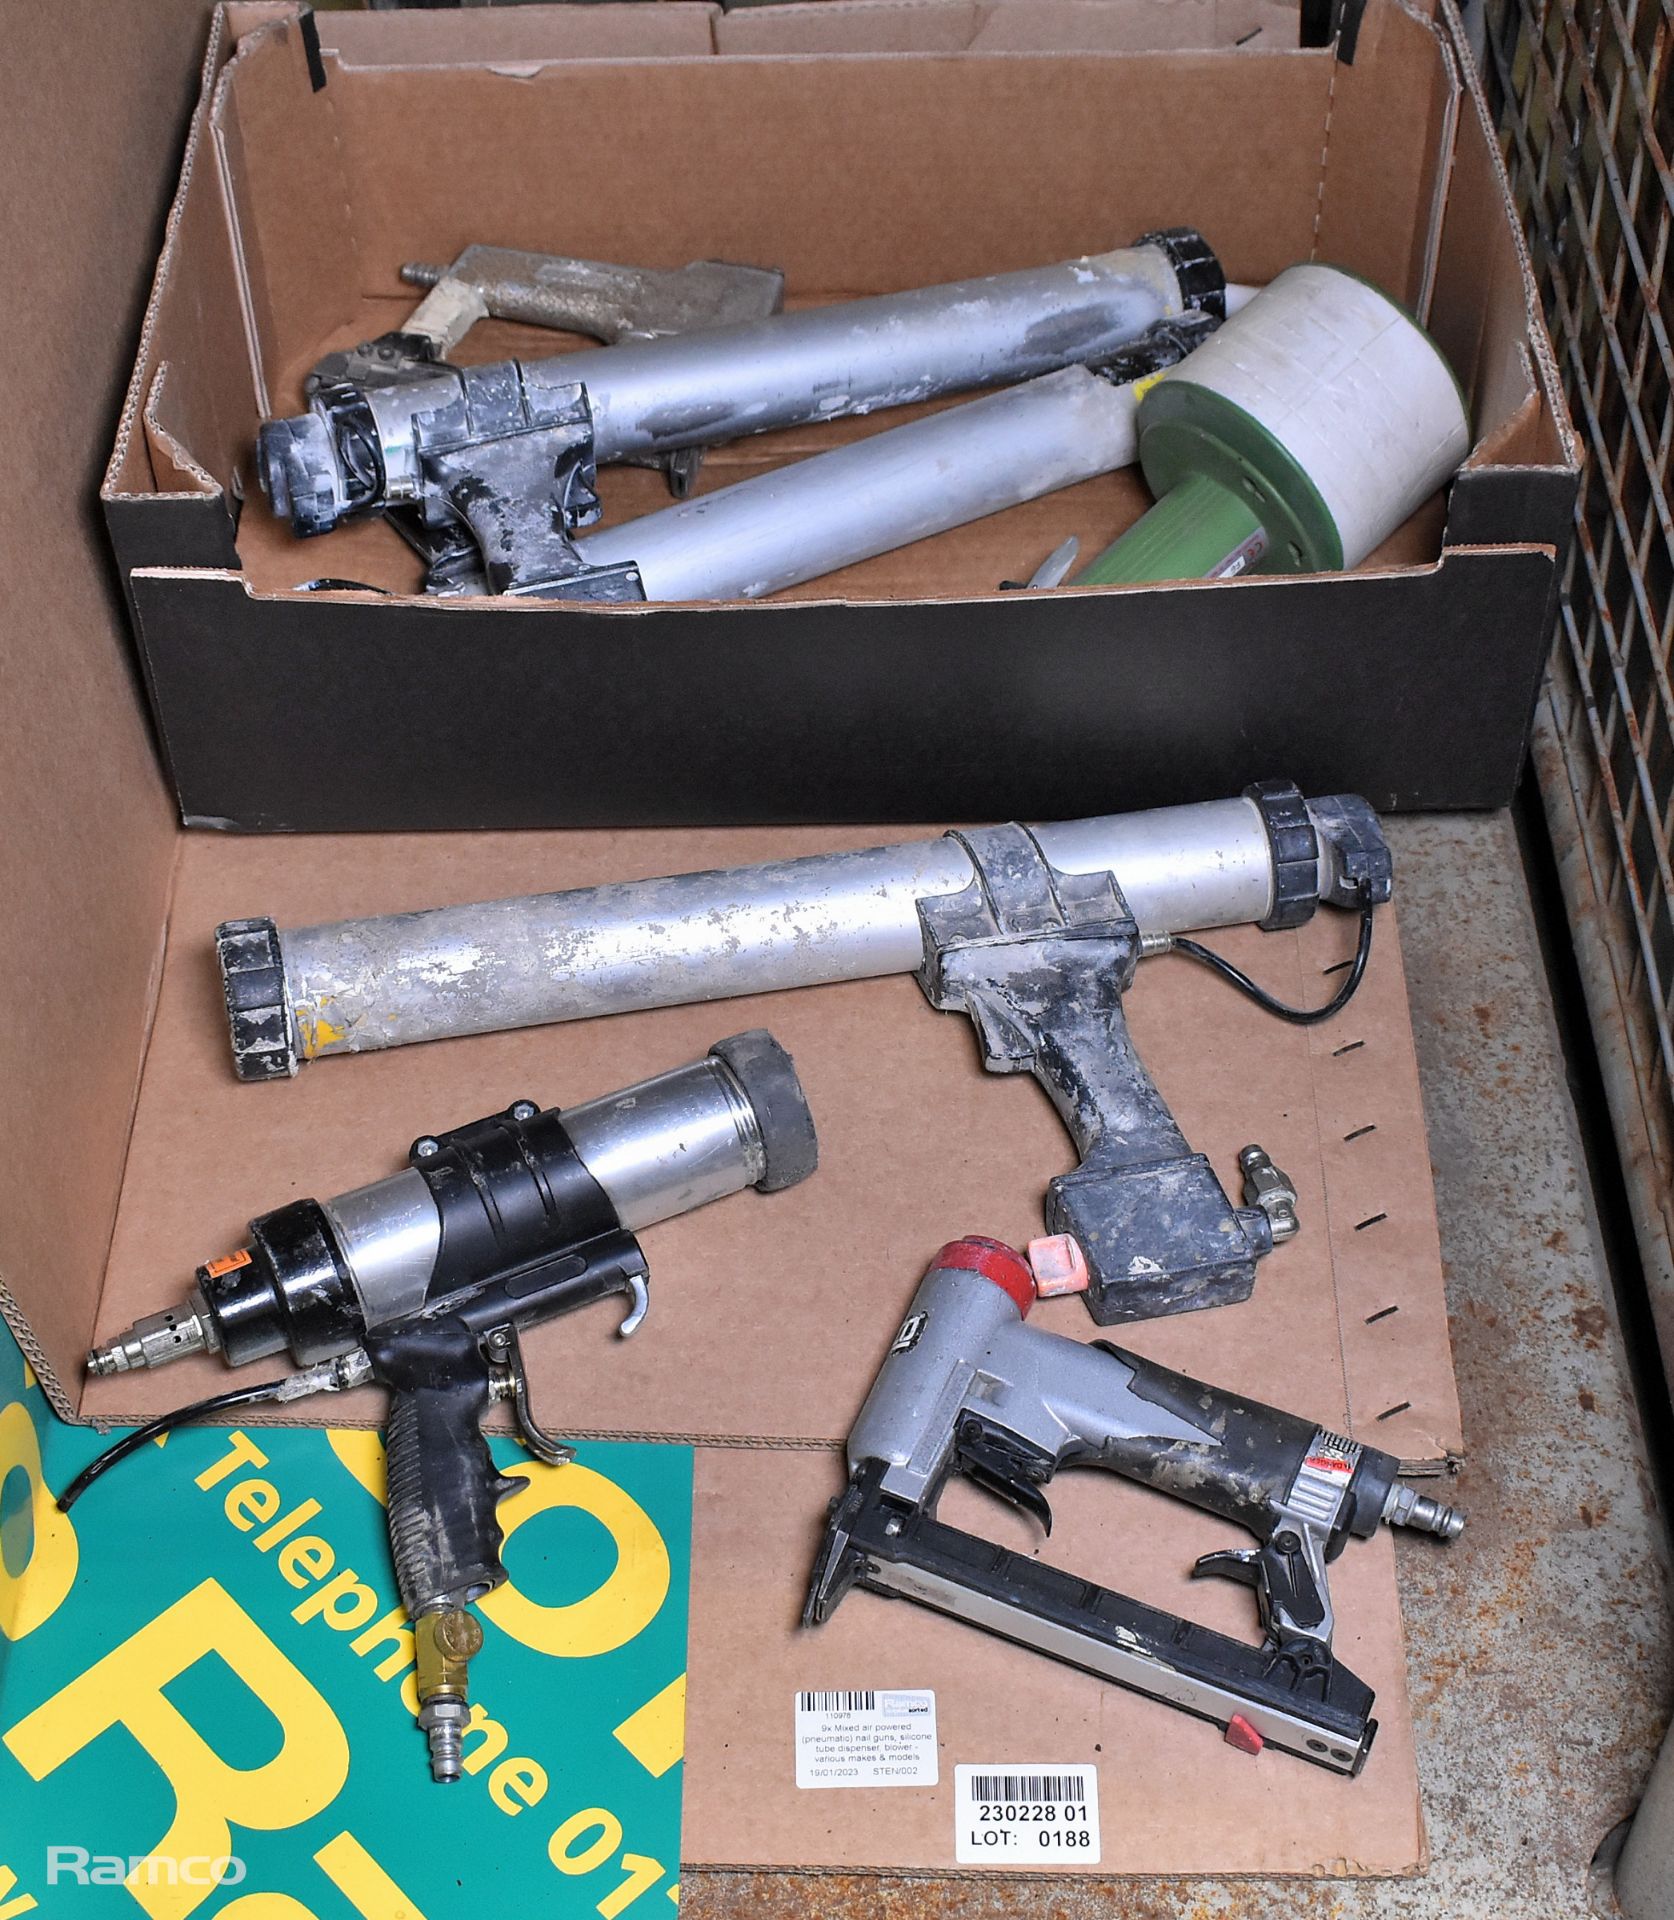 2x Air powered (pneumatic) nail guns, 4x silicone tube dispenser, Paint srayer